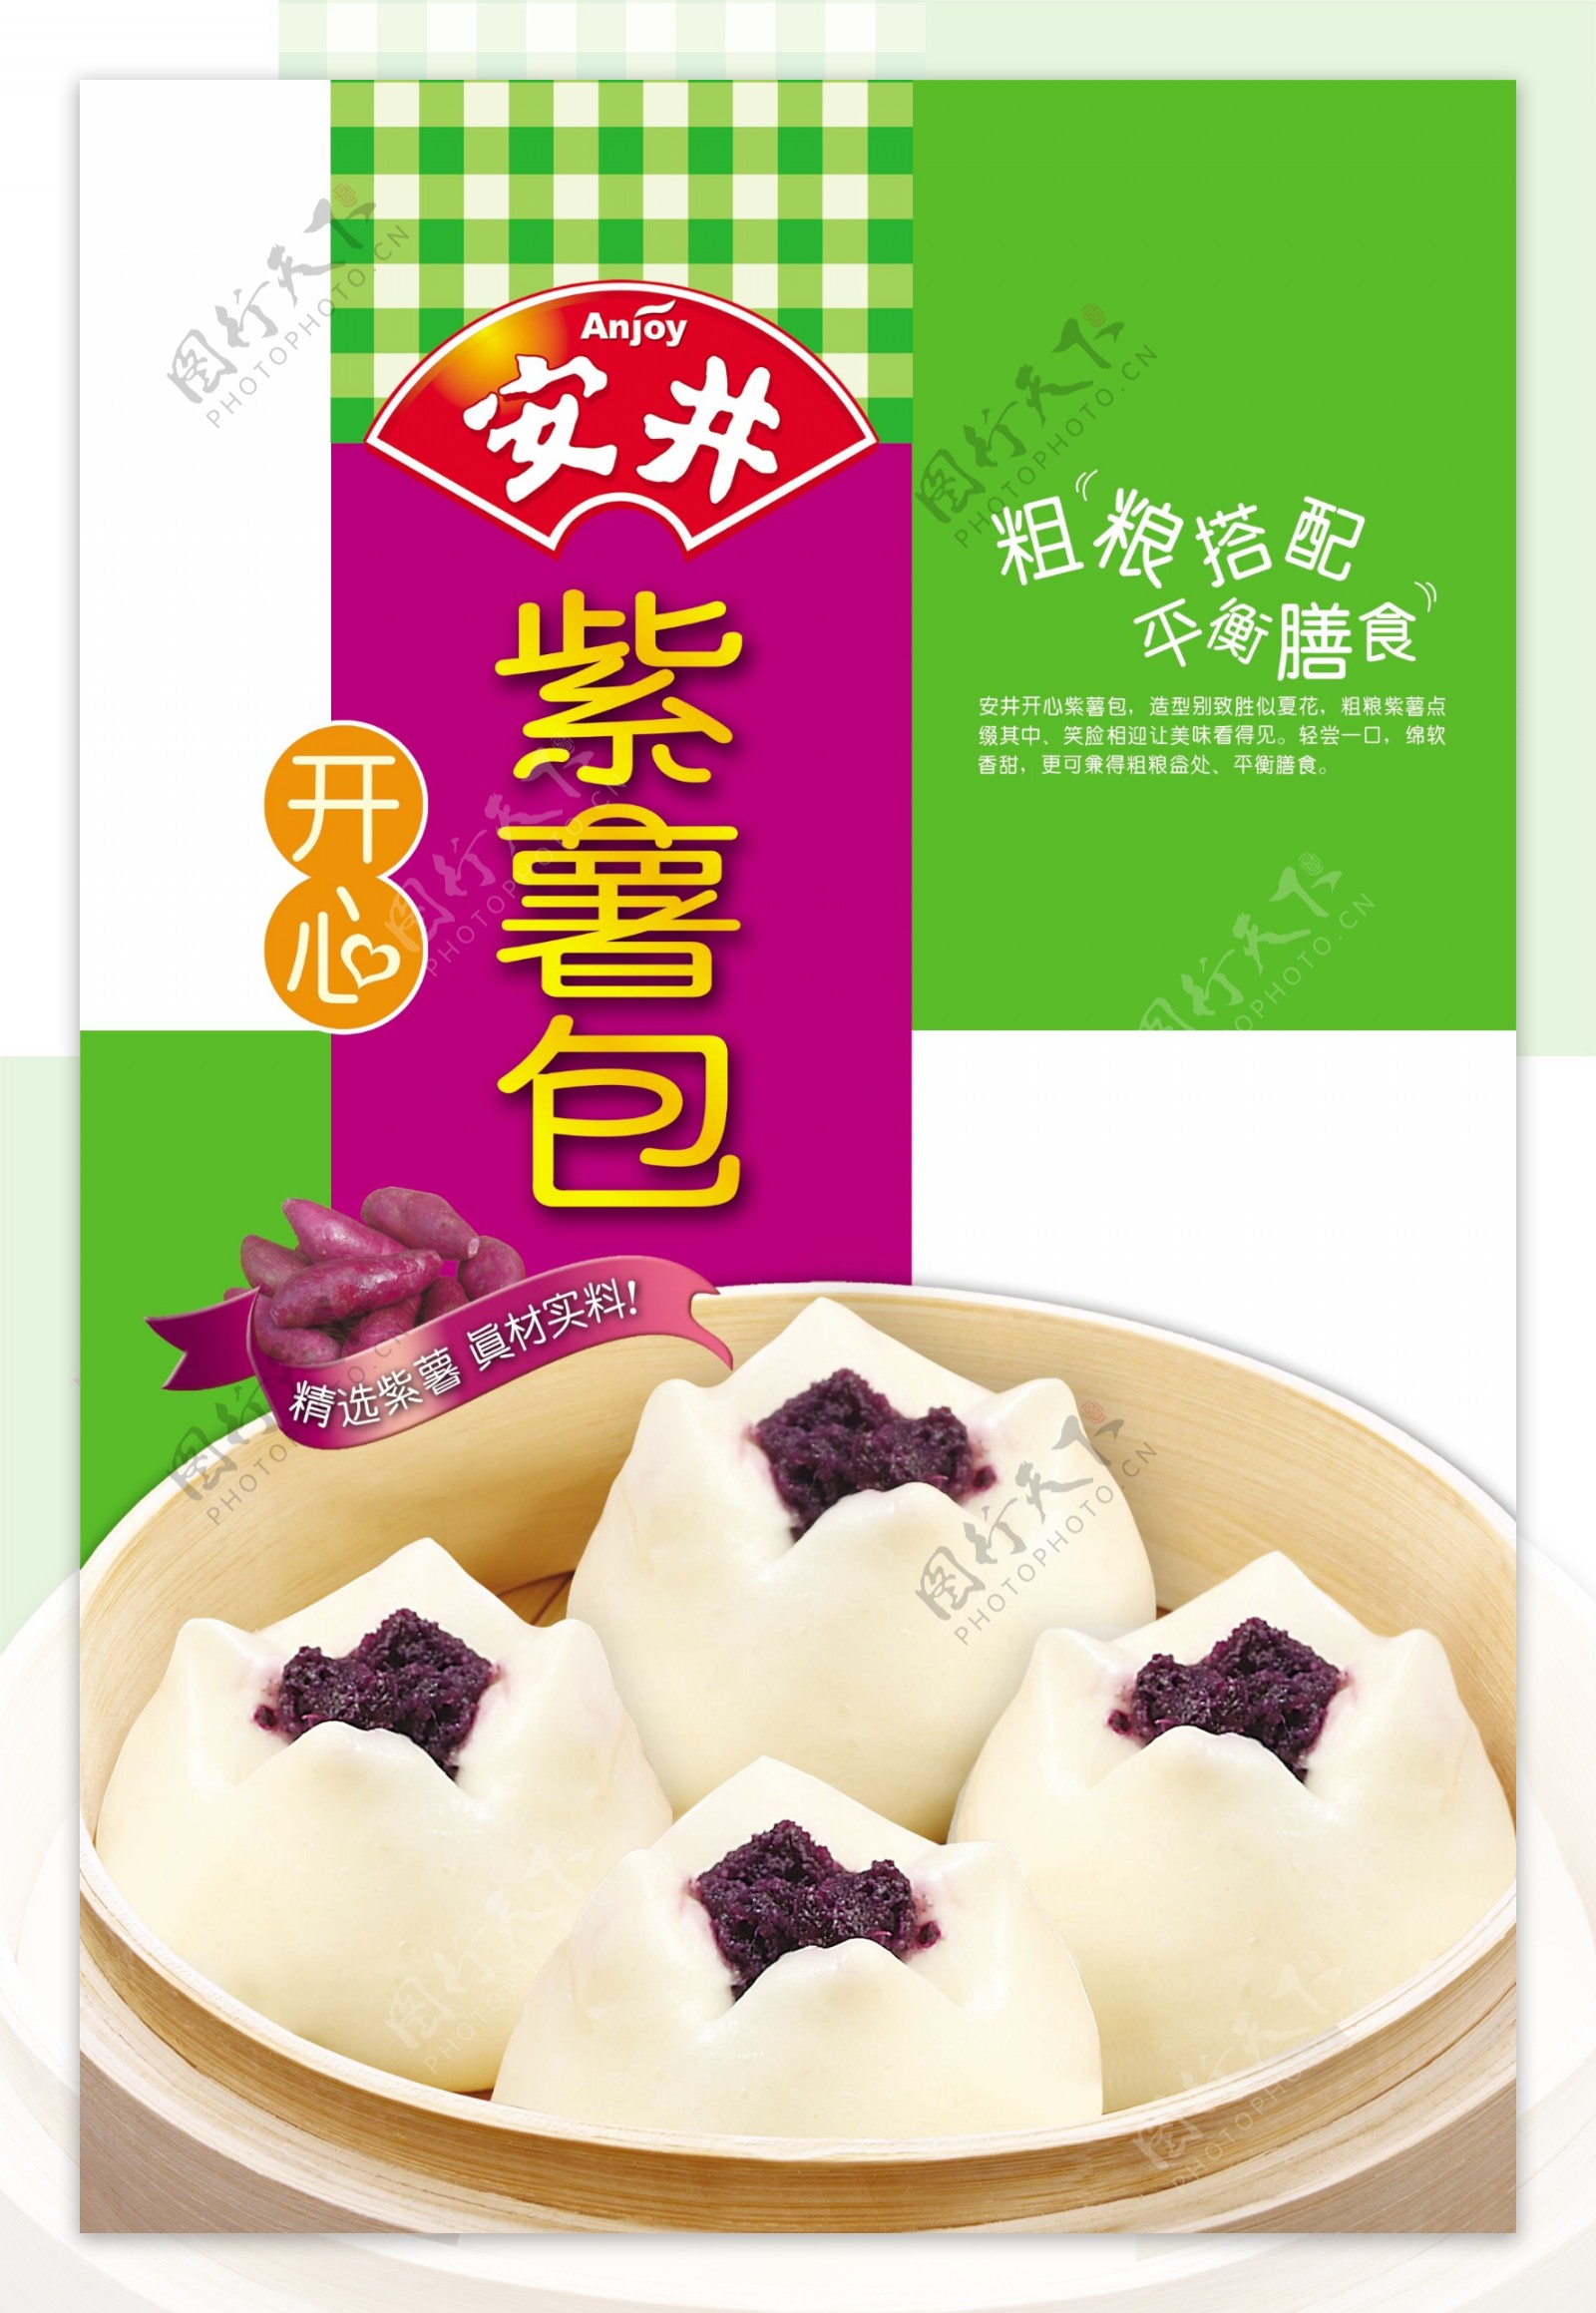 中秋节快到了，教你做南瓜紫薯月饼，简单好吃又健康 - 哔哩哔哩